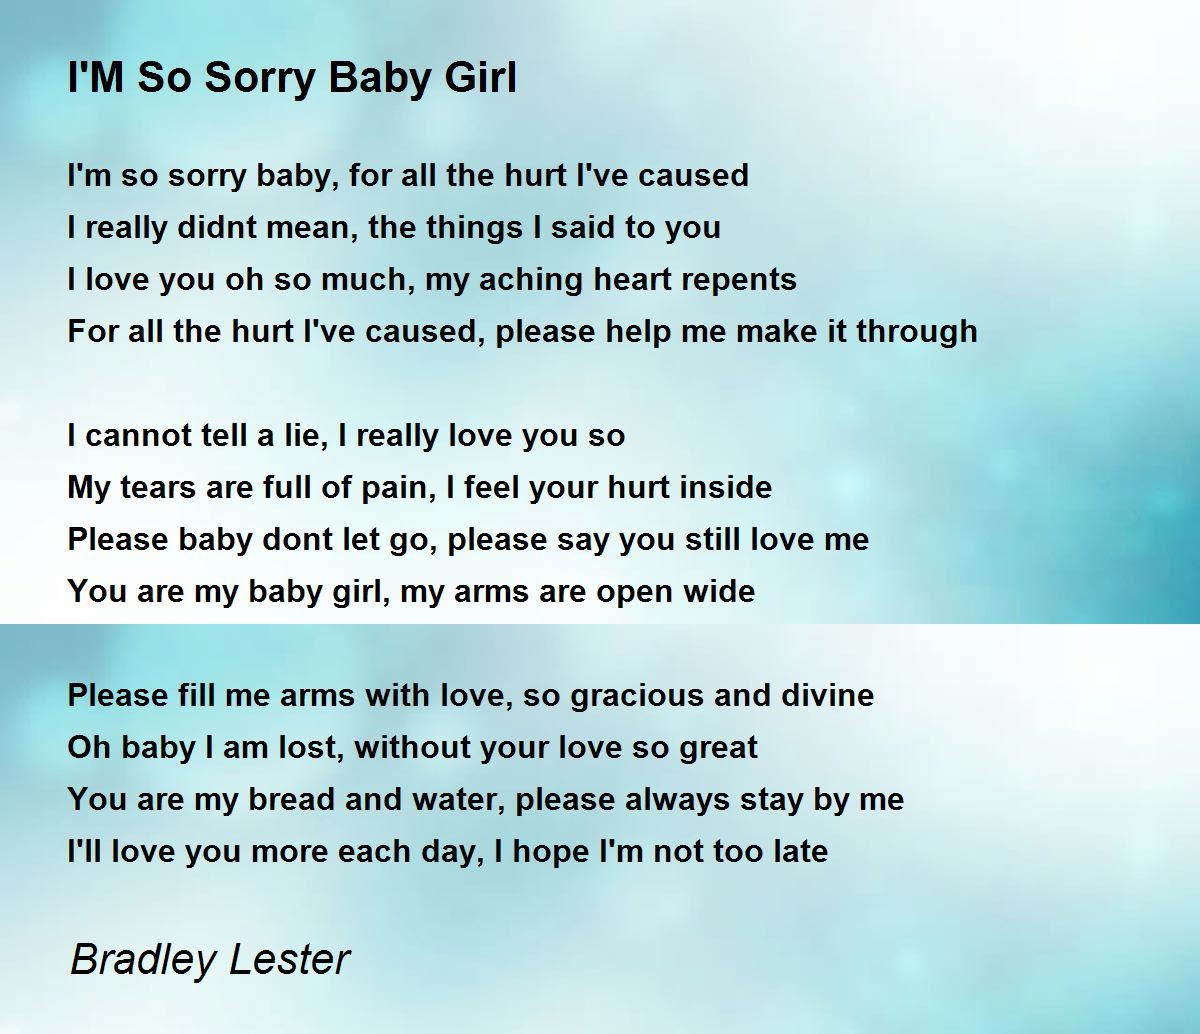 I'M So Sorry Baby Girl - I'M So Sorry Baby Girl Poem by Bradley Lester